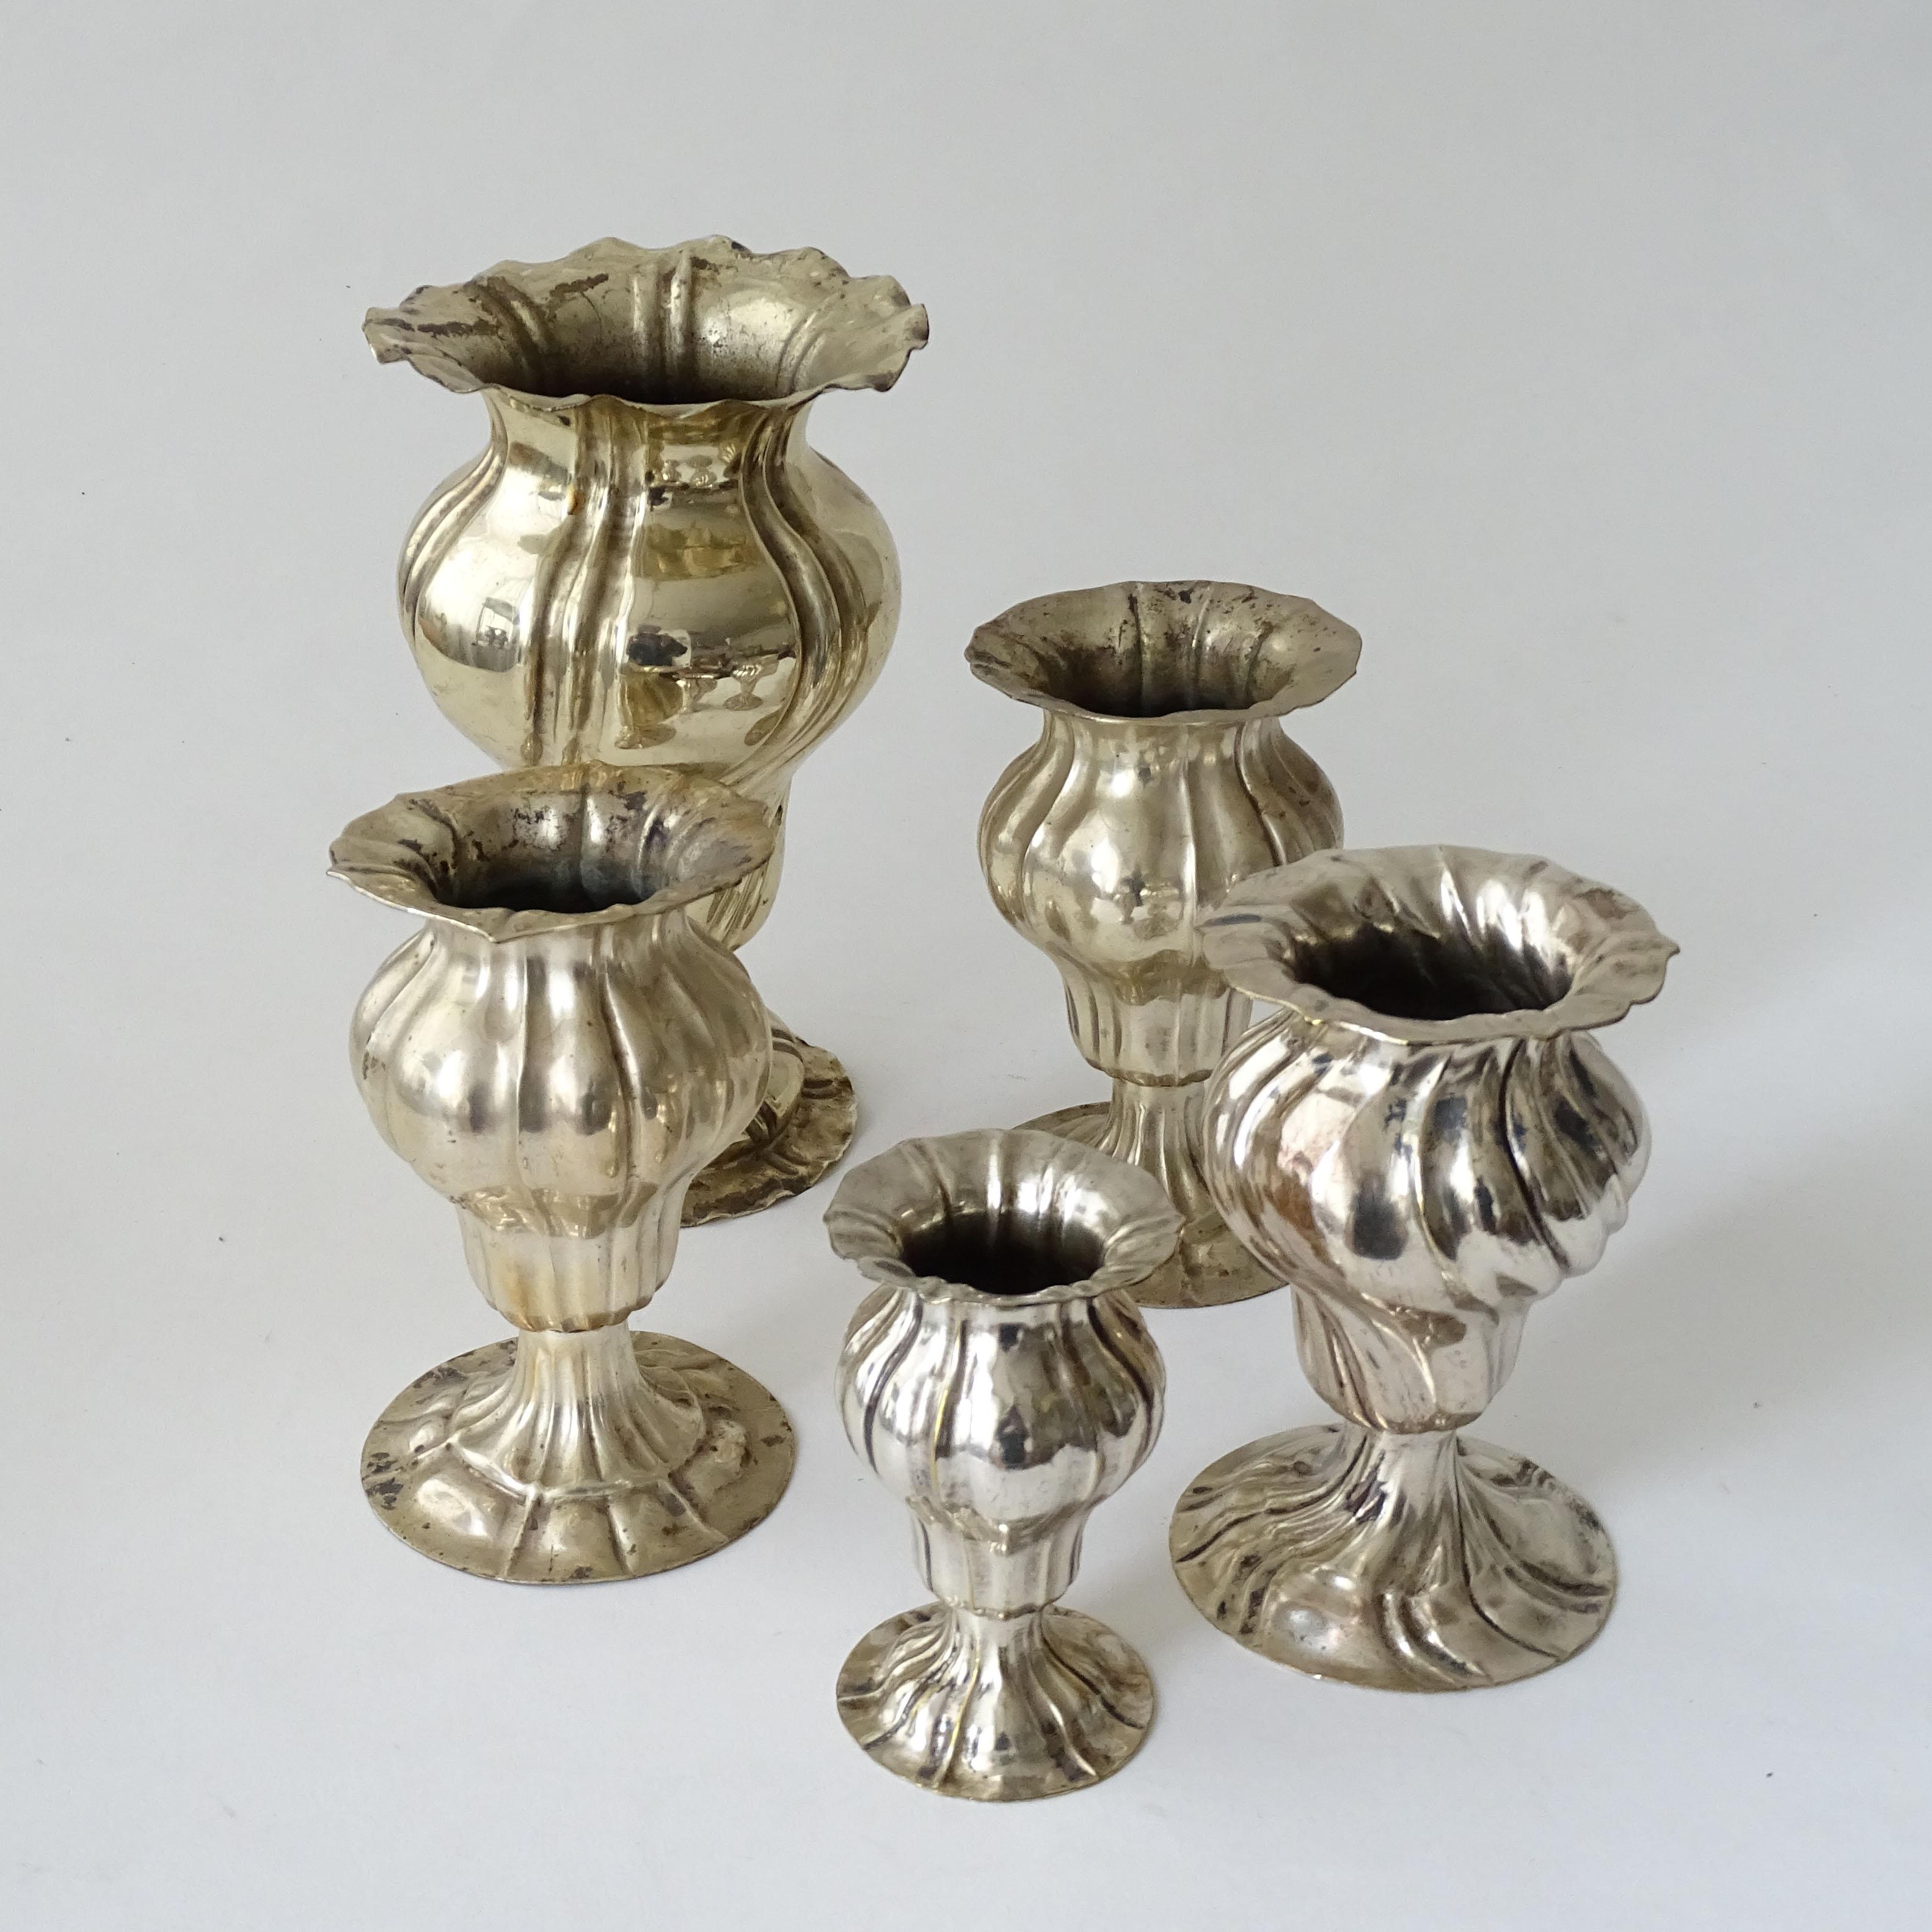 Fünf kleine antike Soliflores-Vasen aus Silberblech, Italien 1920er Jahre
Für eine schöne Blumendekoration auf dem Esstisch.